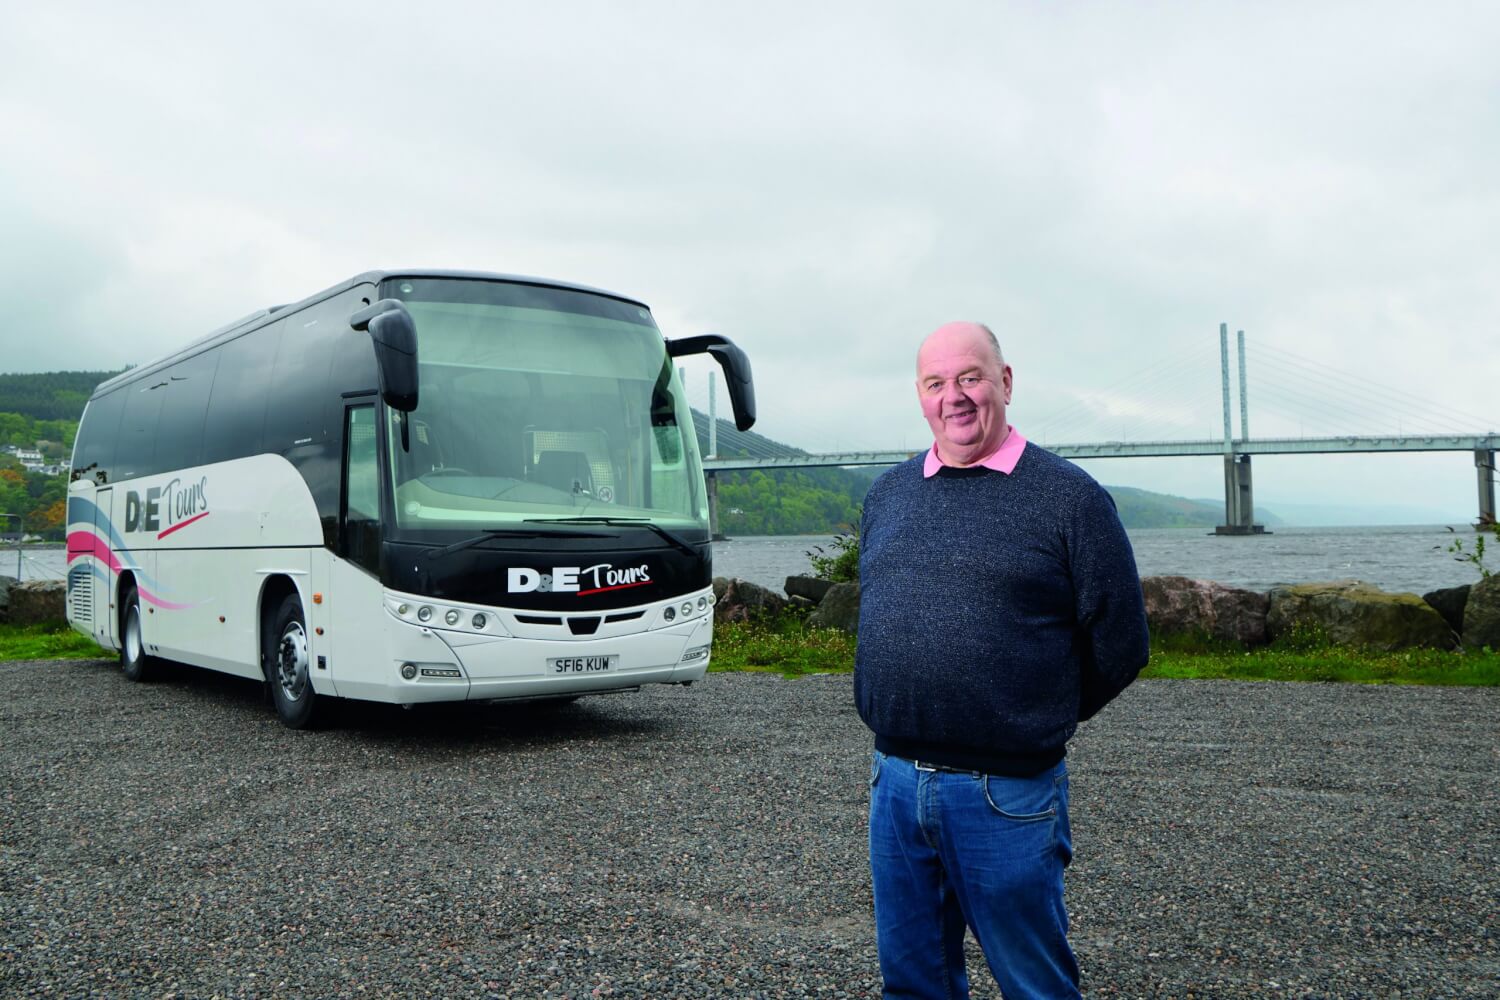 Donald Matheson with D&E Tours bus.